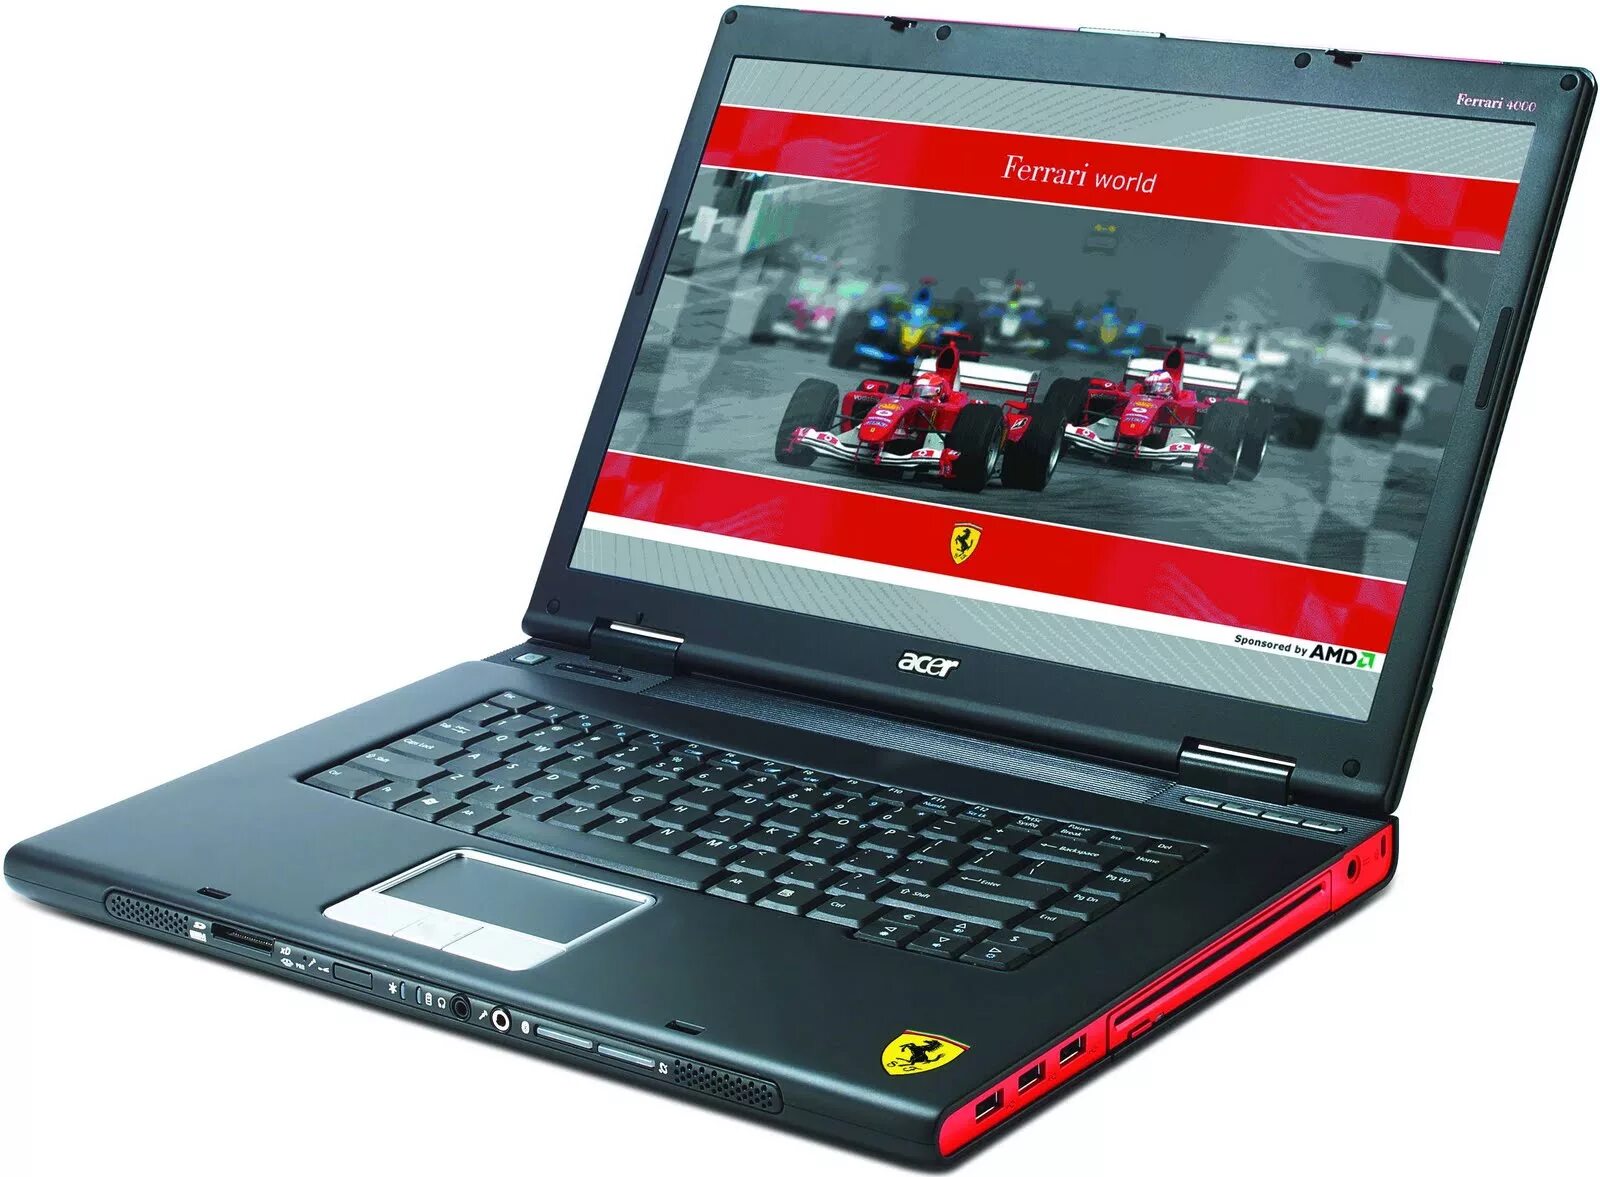 Acer ferrari. Acer Ferrari 4005wlmi. Acer Ferrari one 200-314g50n. Acer Ferrari 5005. Acer Ferrari 5005wlh.